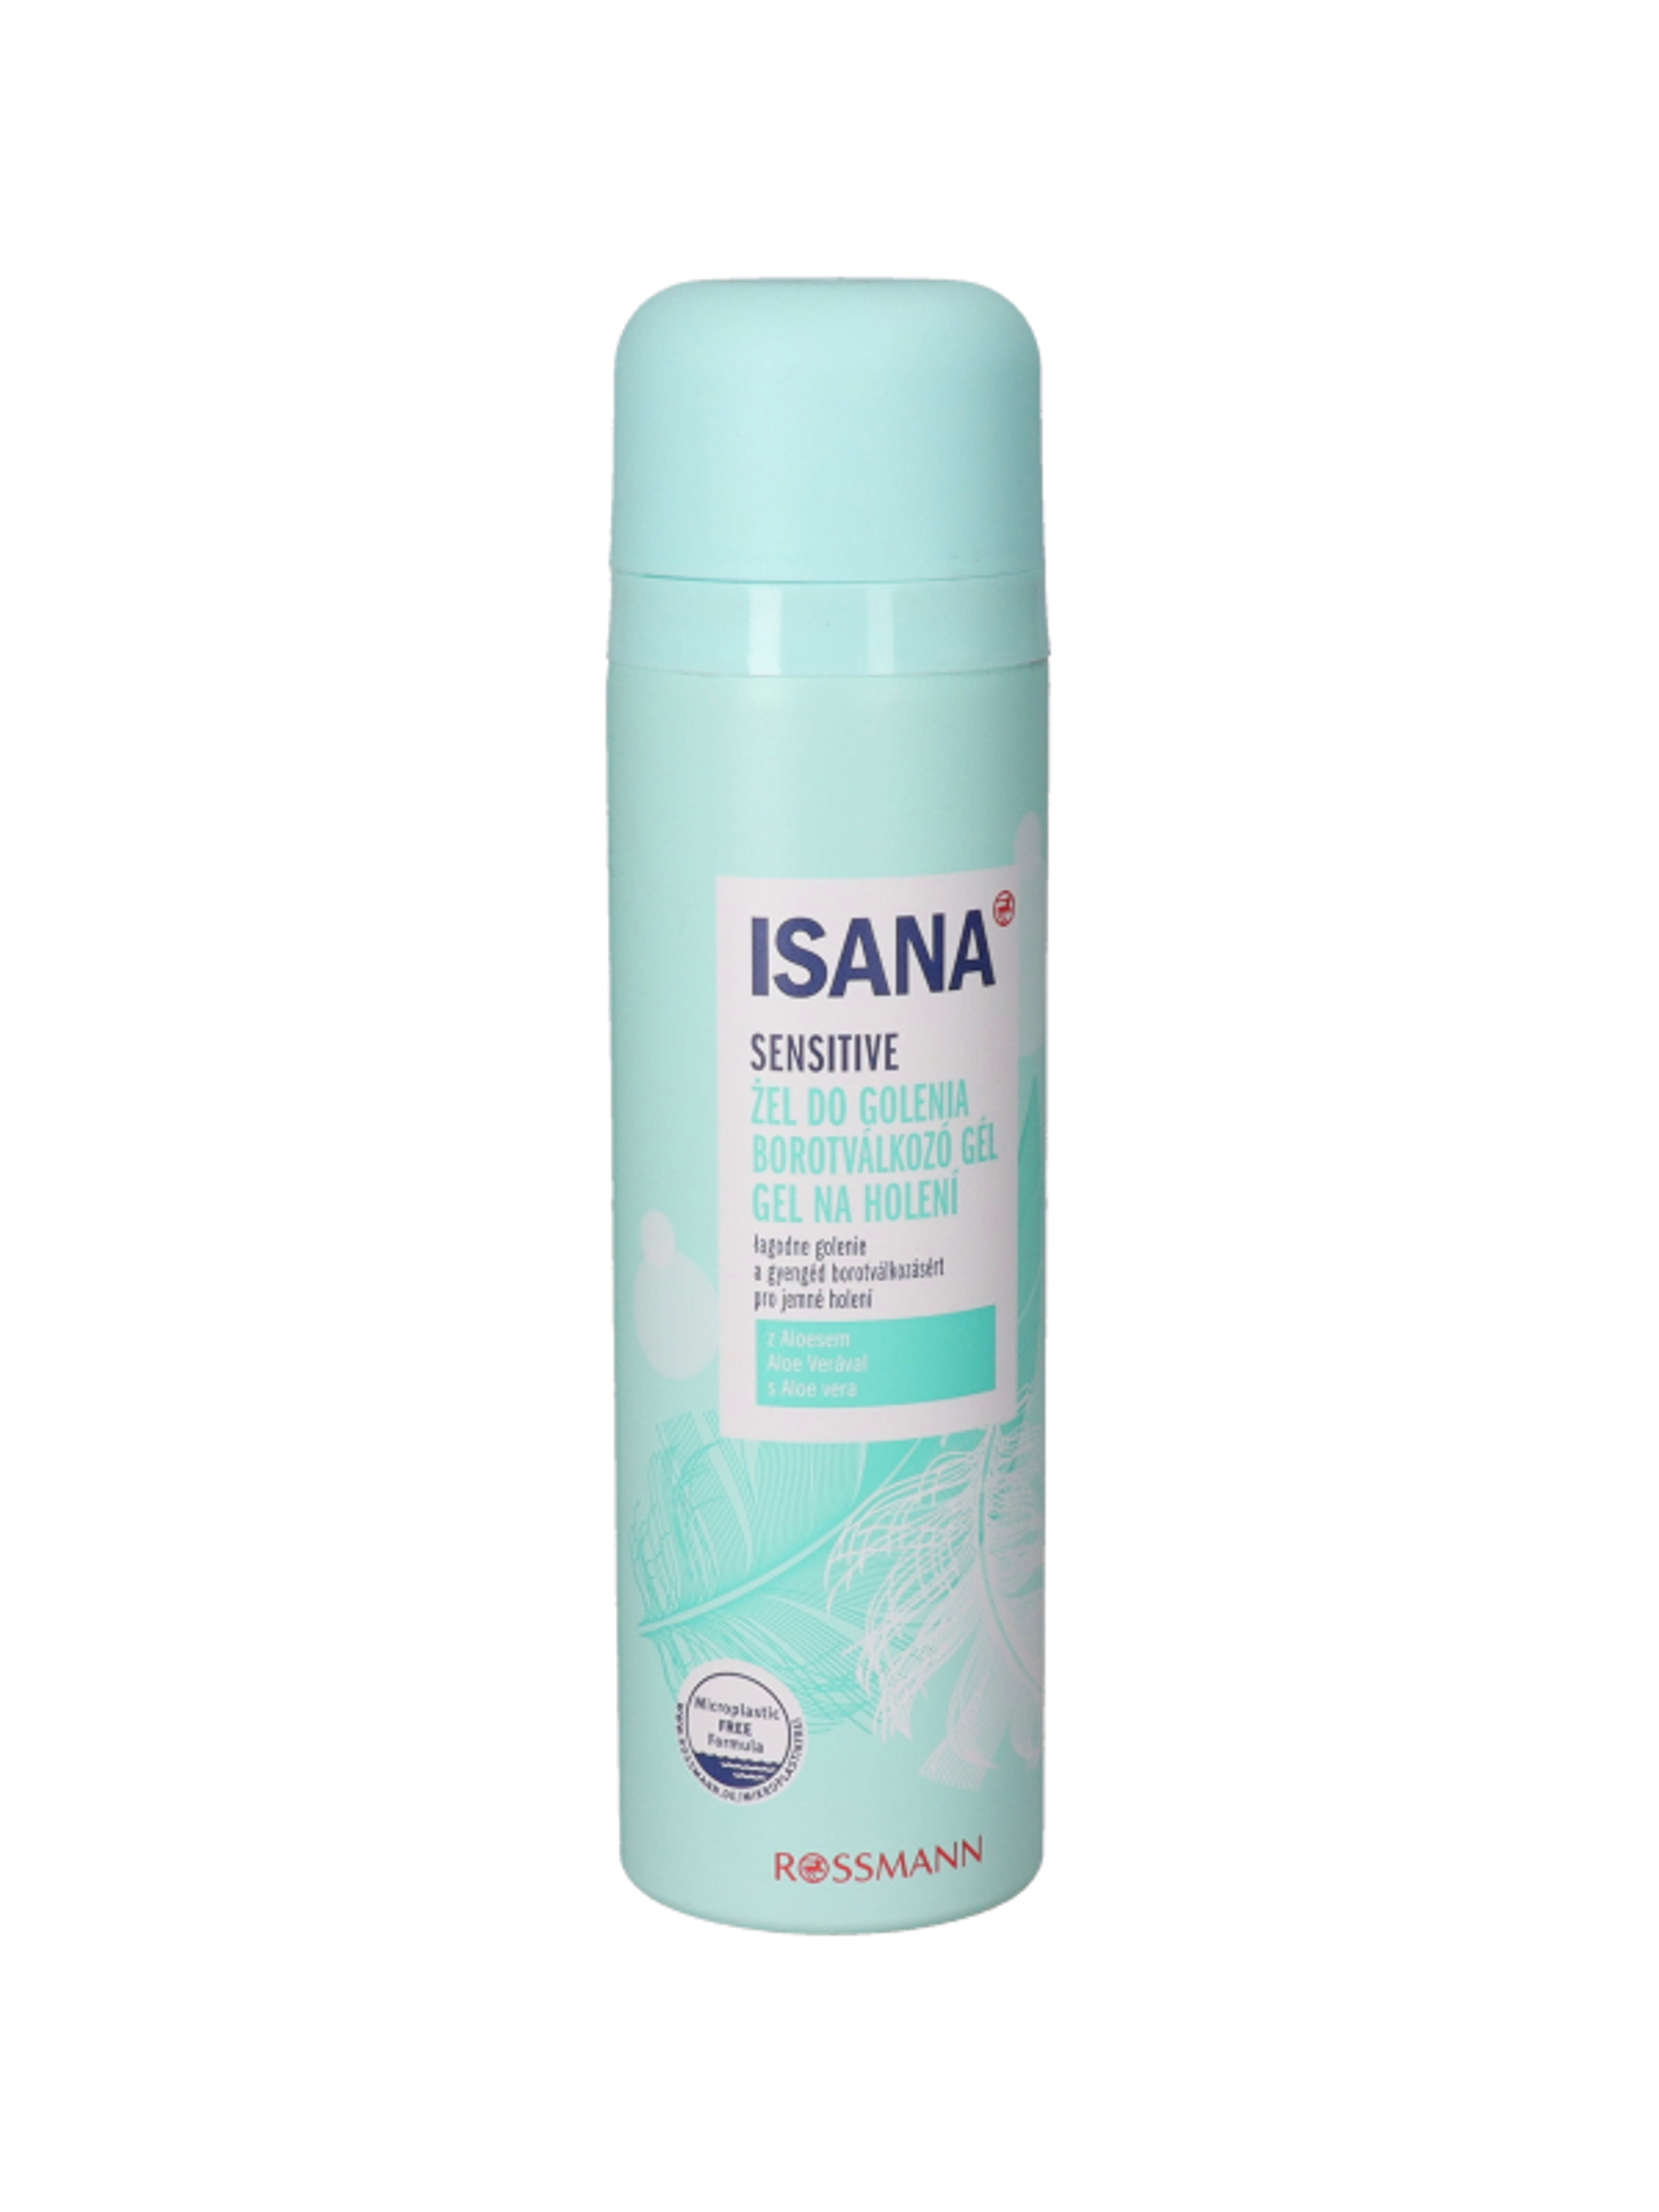 Isana Sensitiv noi borotválkozó gél - 150 ml-3